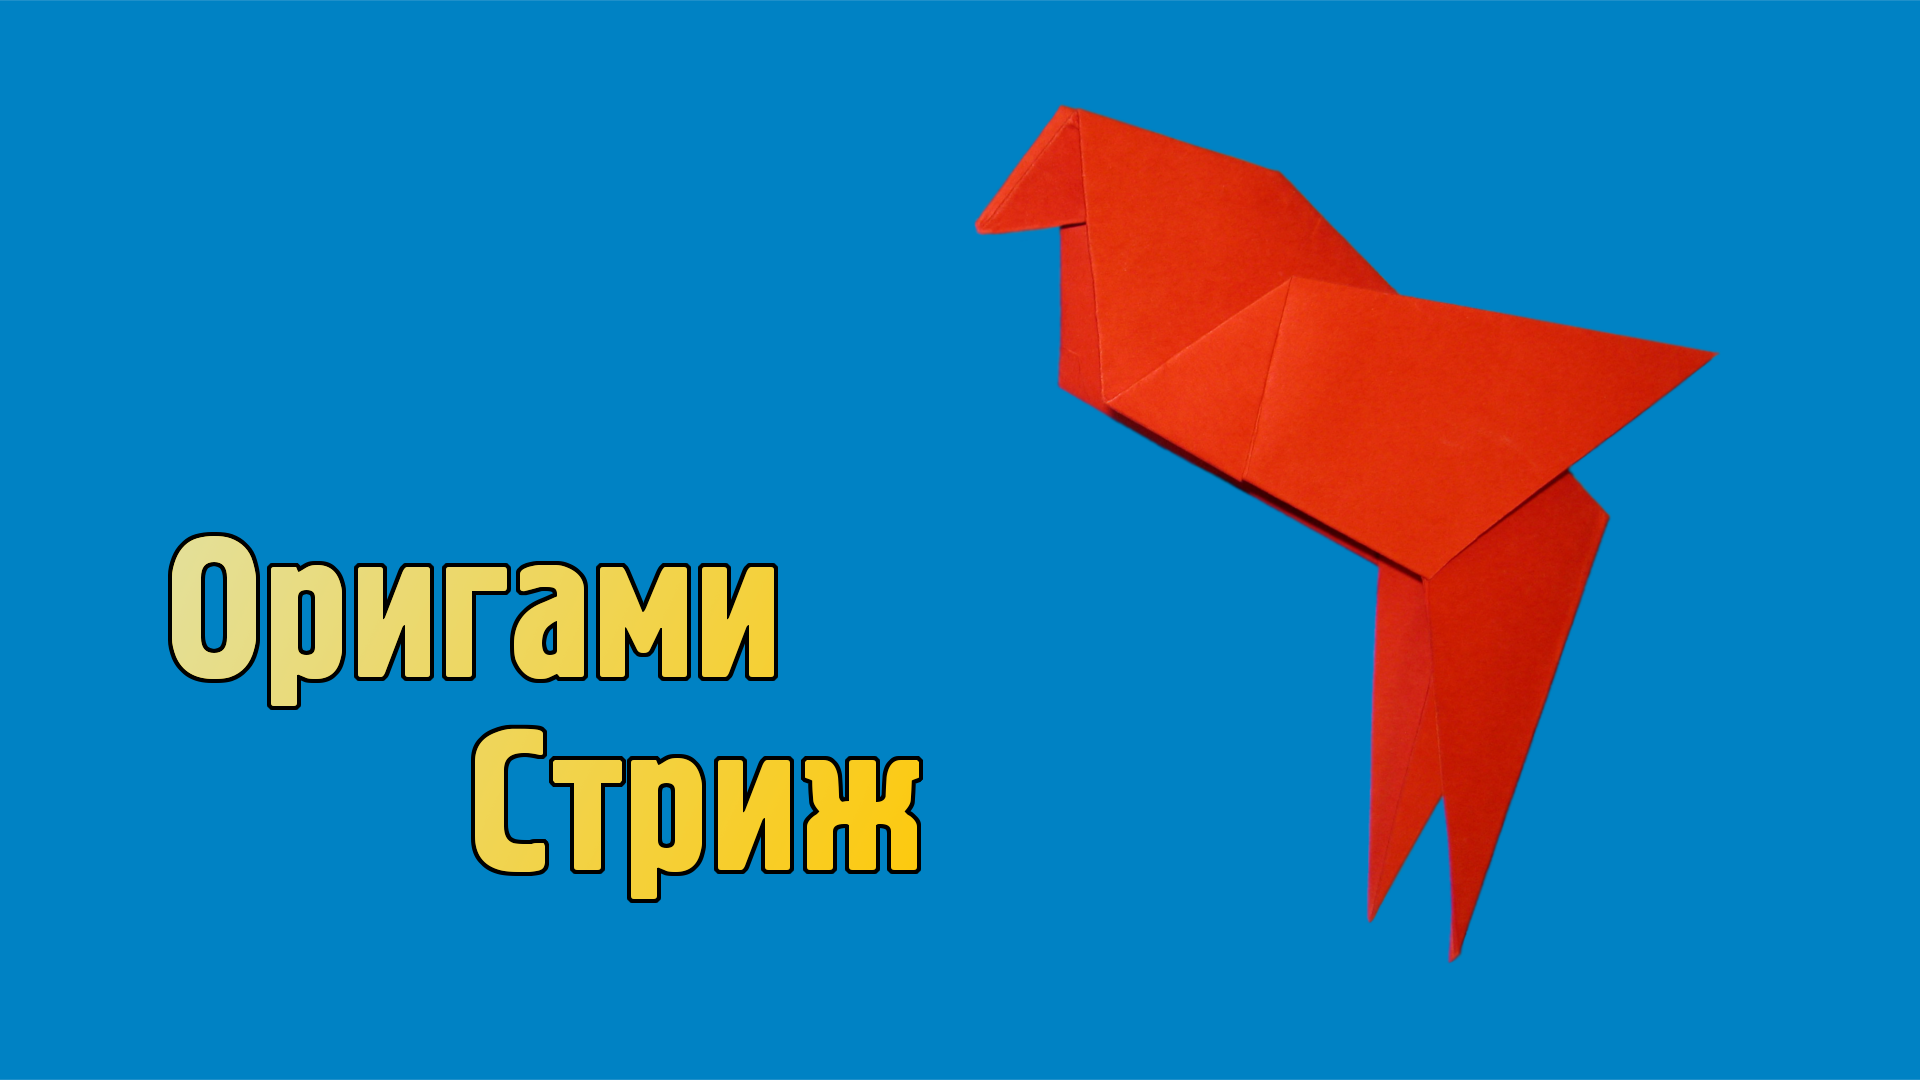 Как сделать Стрижа из бумаги | Оригами Стриж своими руками | Фигурка Птицы для детей без клея